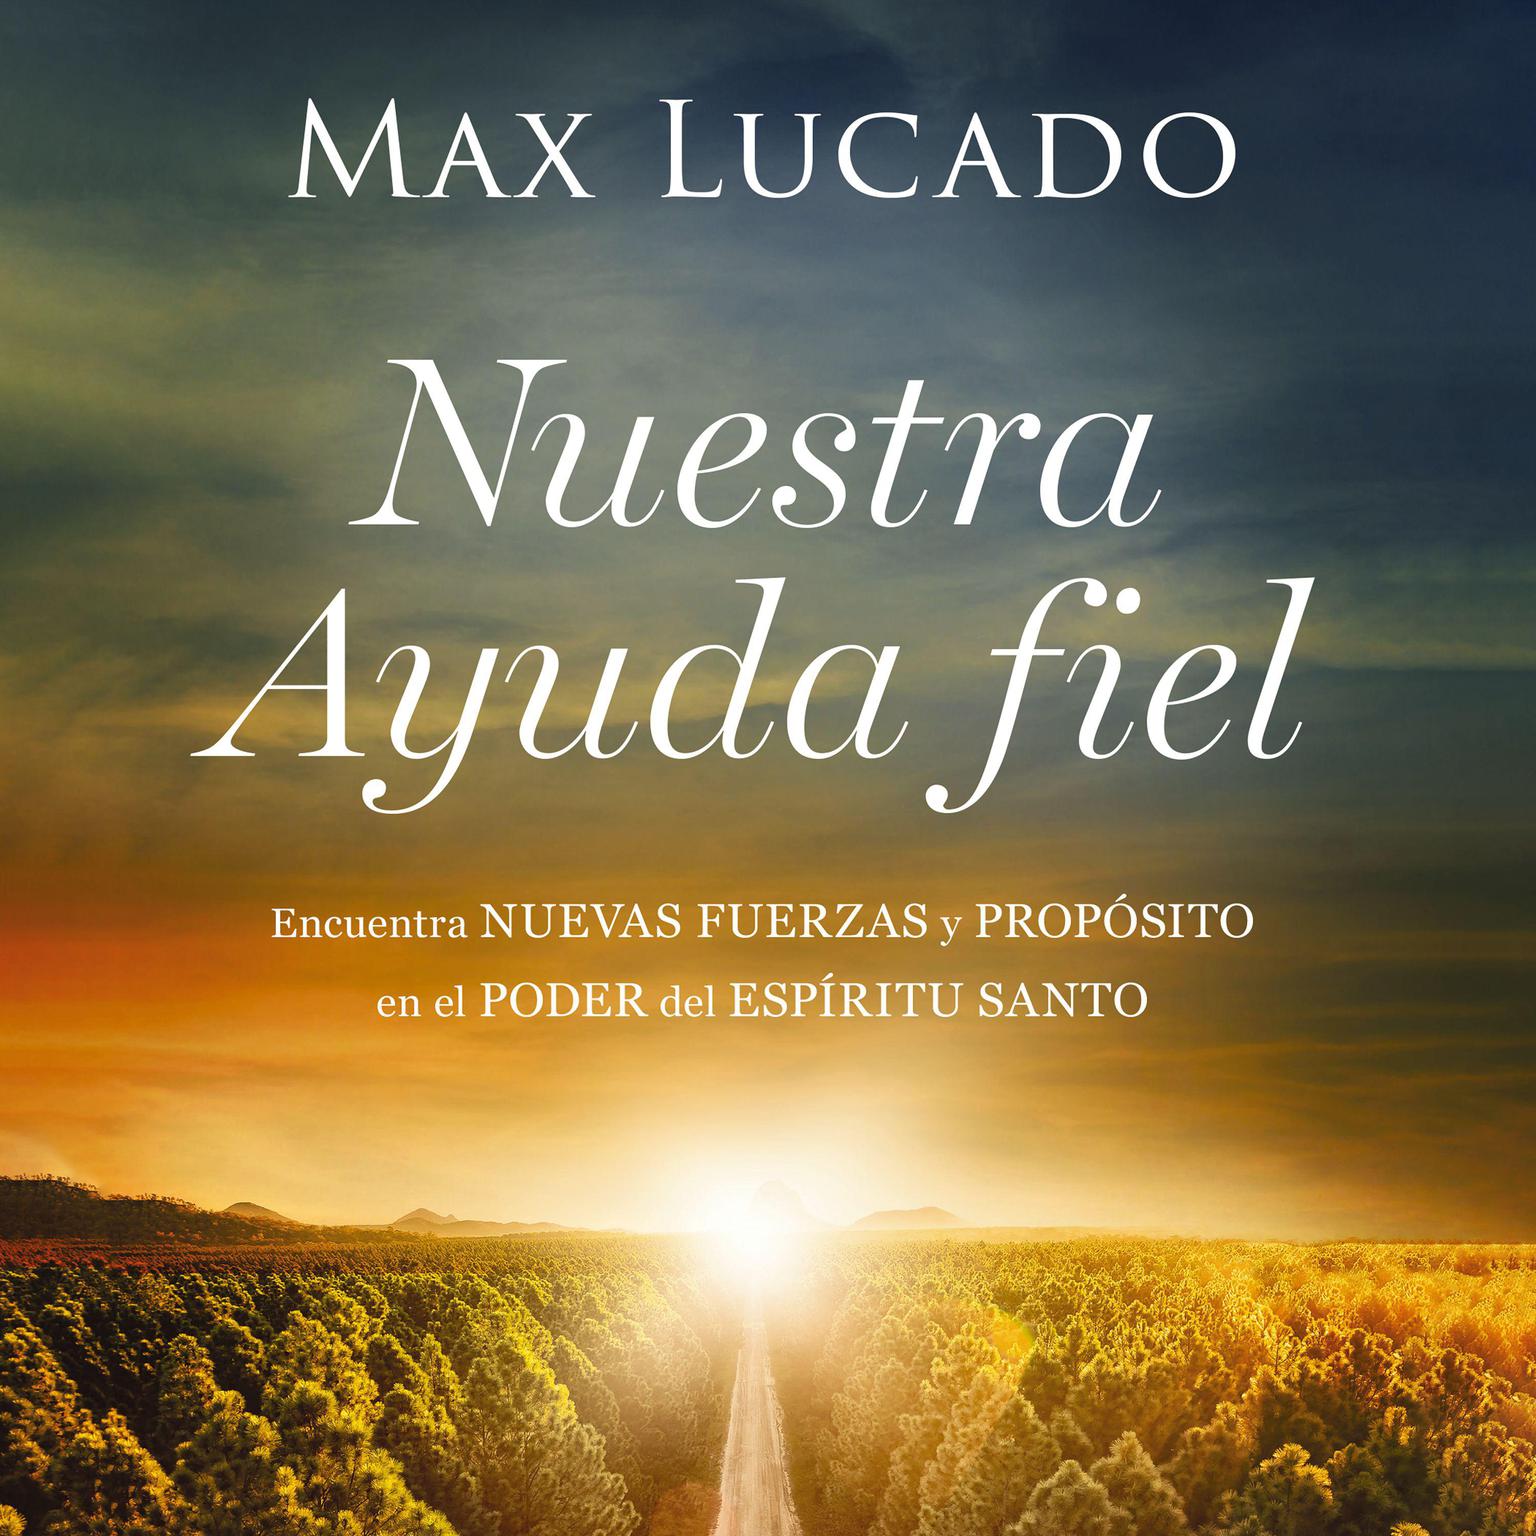 Nuestra Ayuda fiel: Encuentra nuevas fuerzas y propósito en el poder del Espíritu Santo Audiobook, by Max Lucado